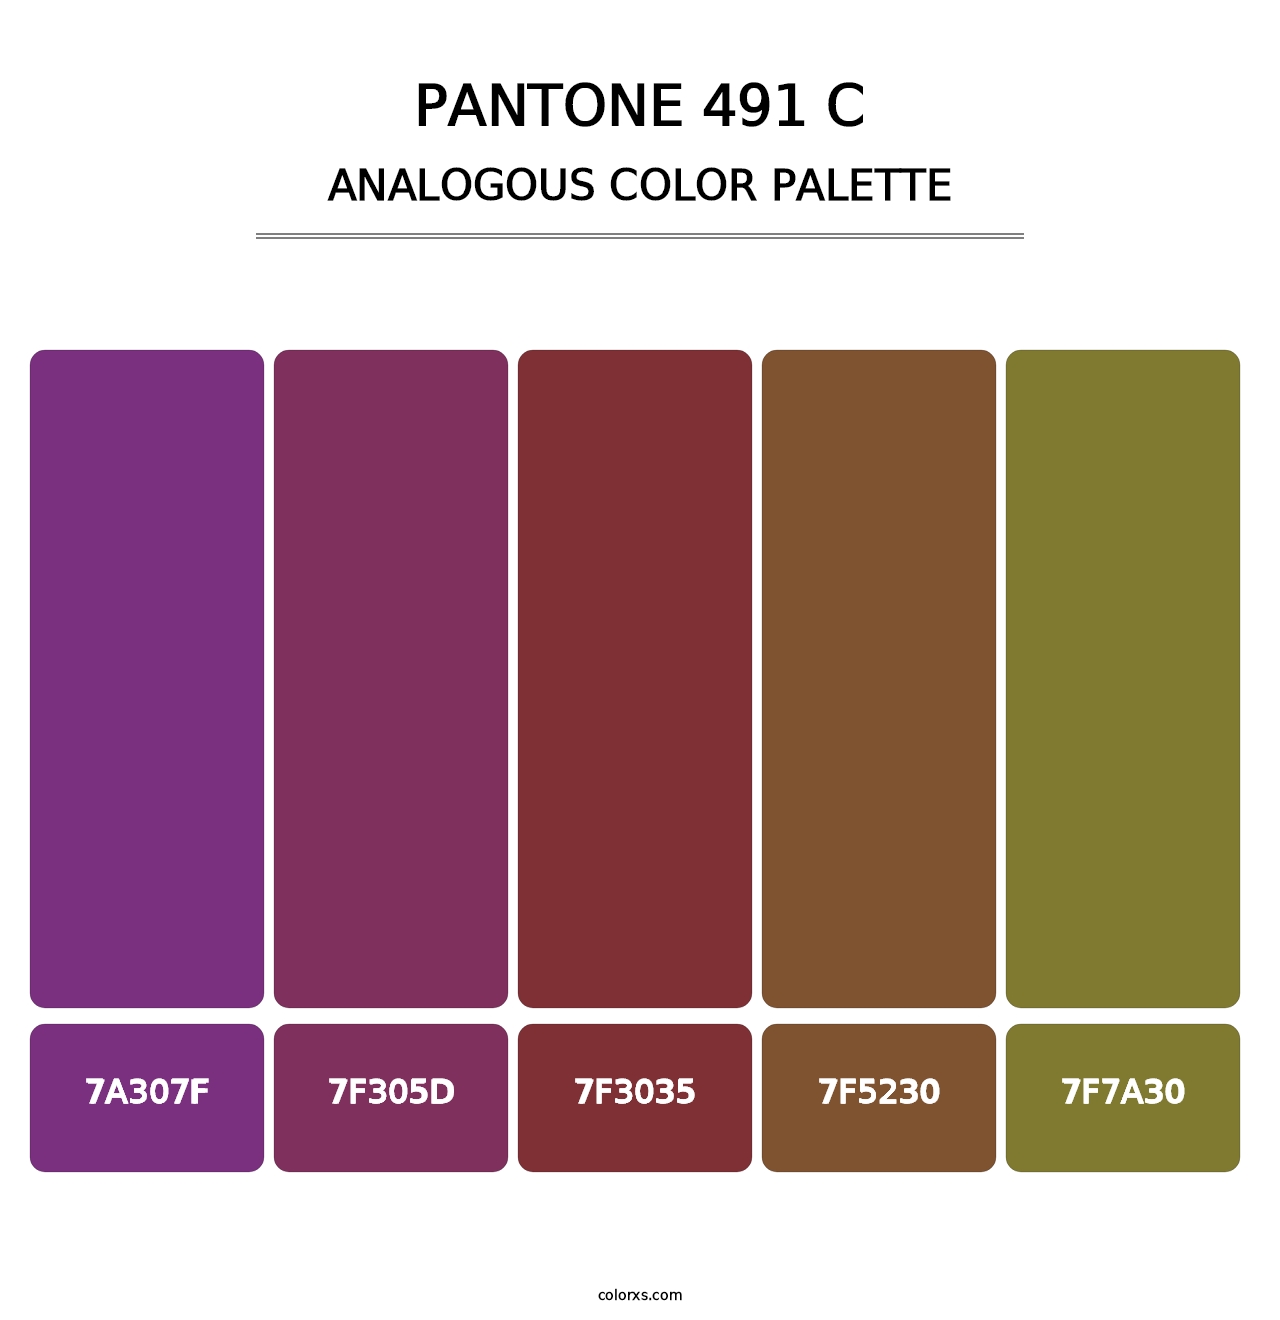 PANTONE 491 C - Analogous Color Palette